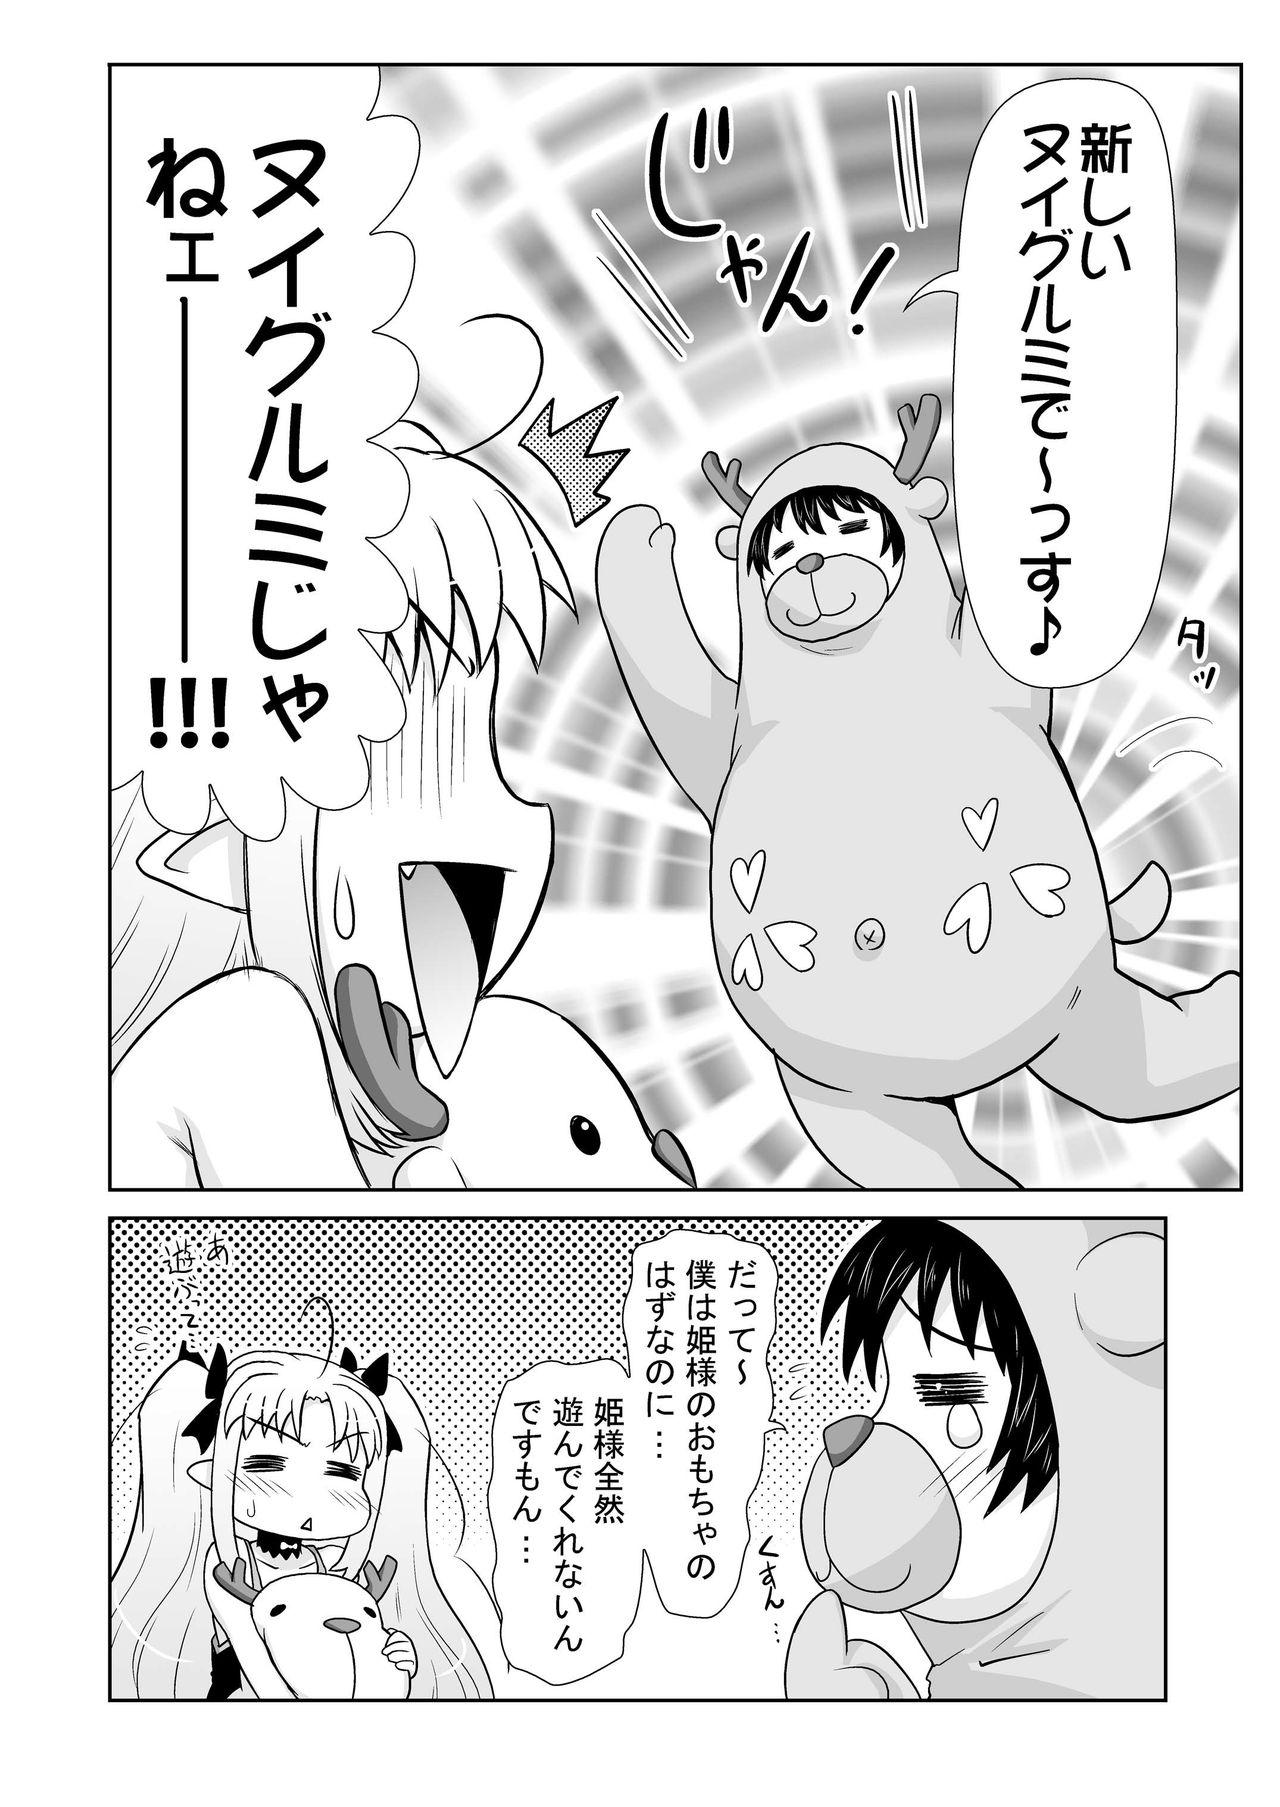 Siririca Boku wa Lotte-sama no Omocha desu ga, Nani ka? - Lotte no omocha Class Room - Page 6